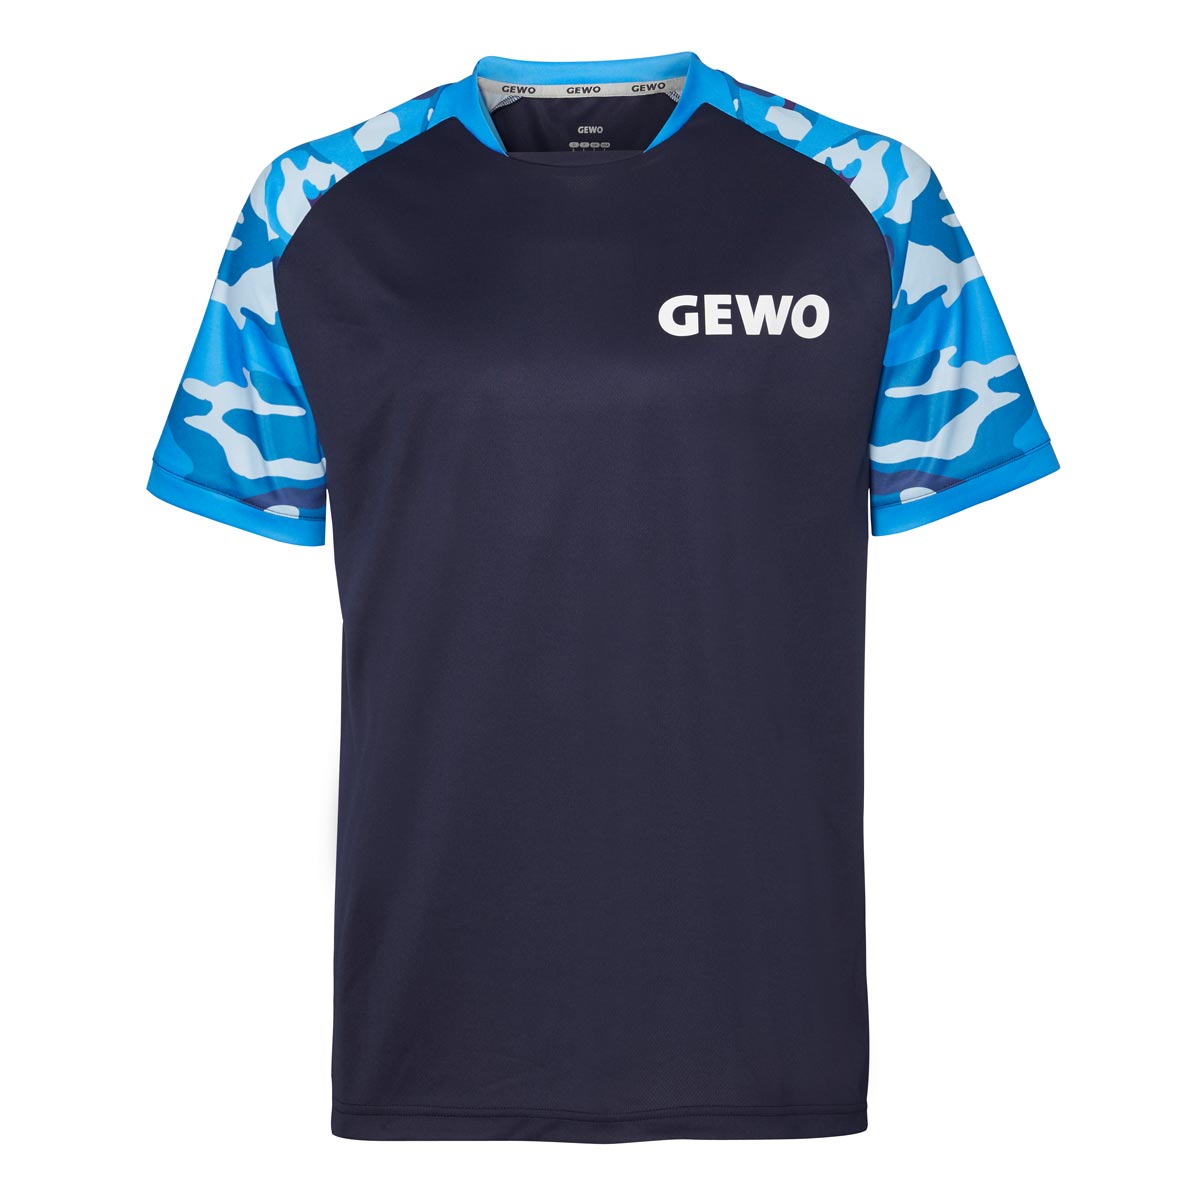 GEWO T-Shirt Riba navy/blau XXXXS